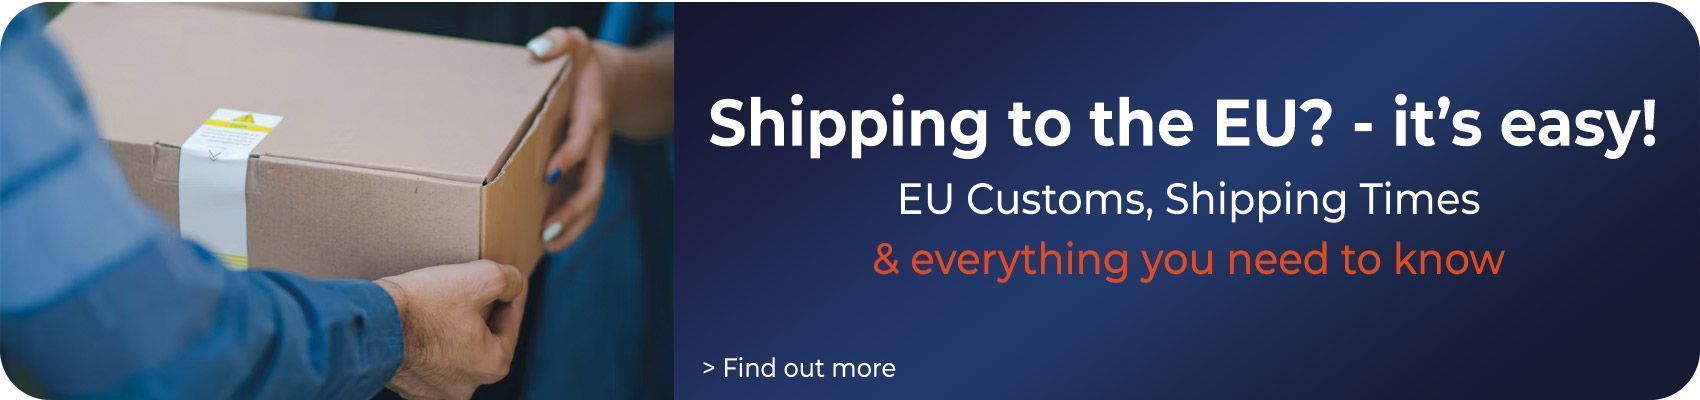 Shipping to the EU